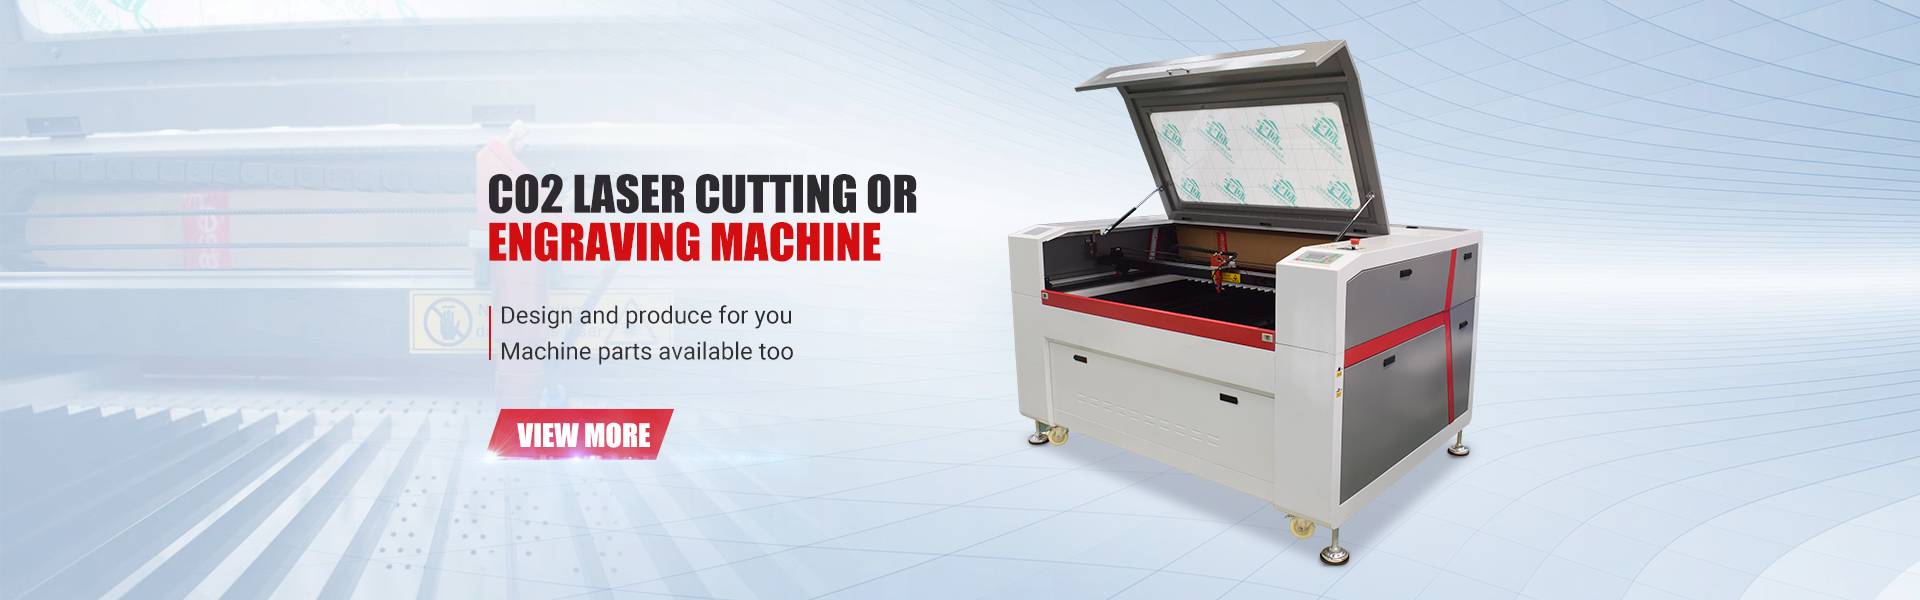 Morekisi ea Phahameng ka ho Fetisisa oa CNC Metal Cutting Engraving Carving Machine 6090